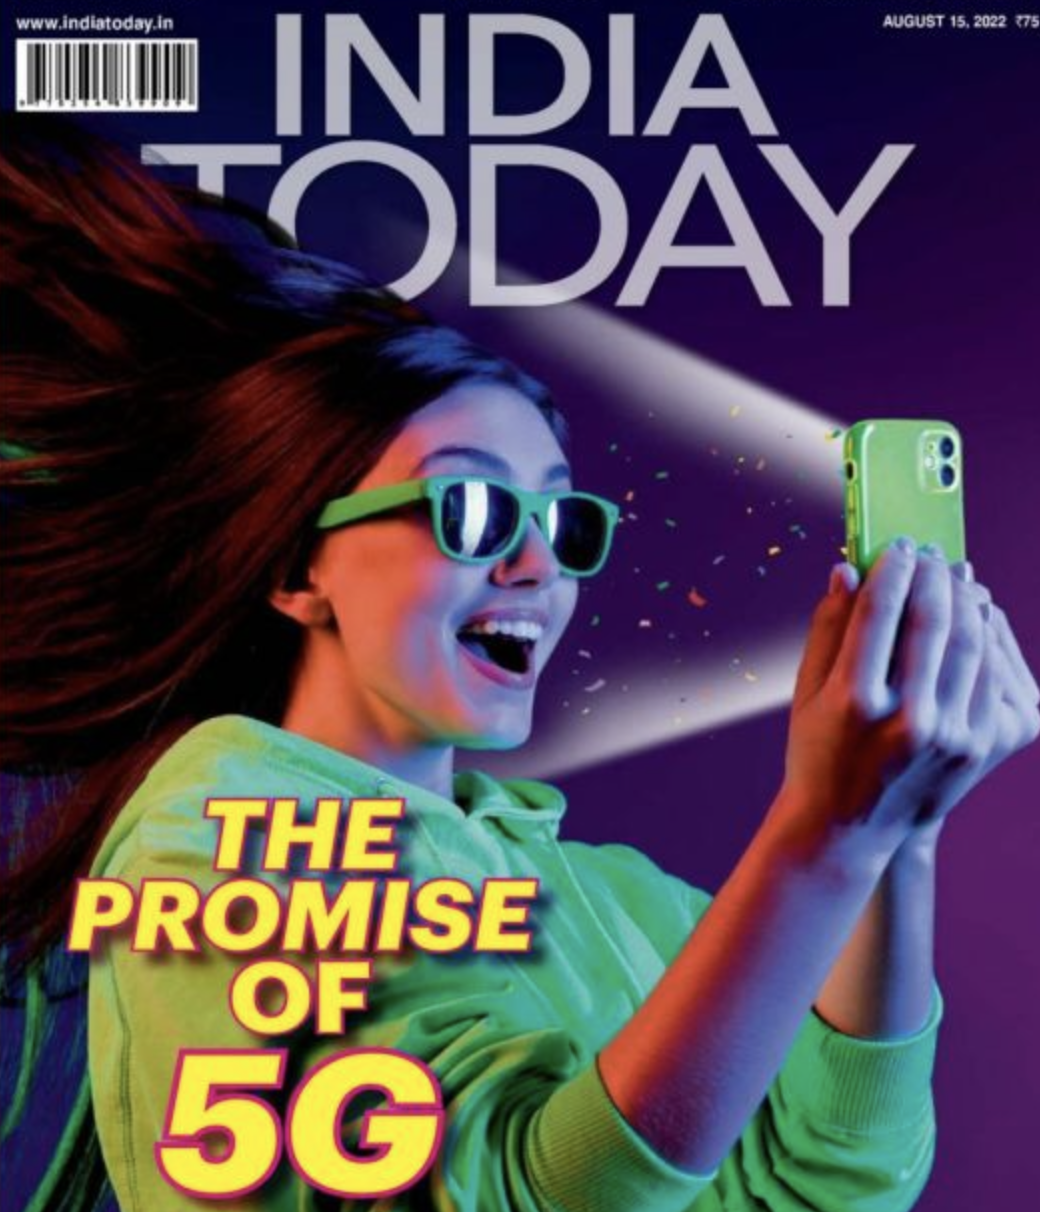 《今日印度》周刊封面